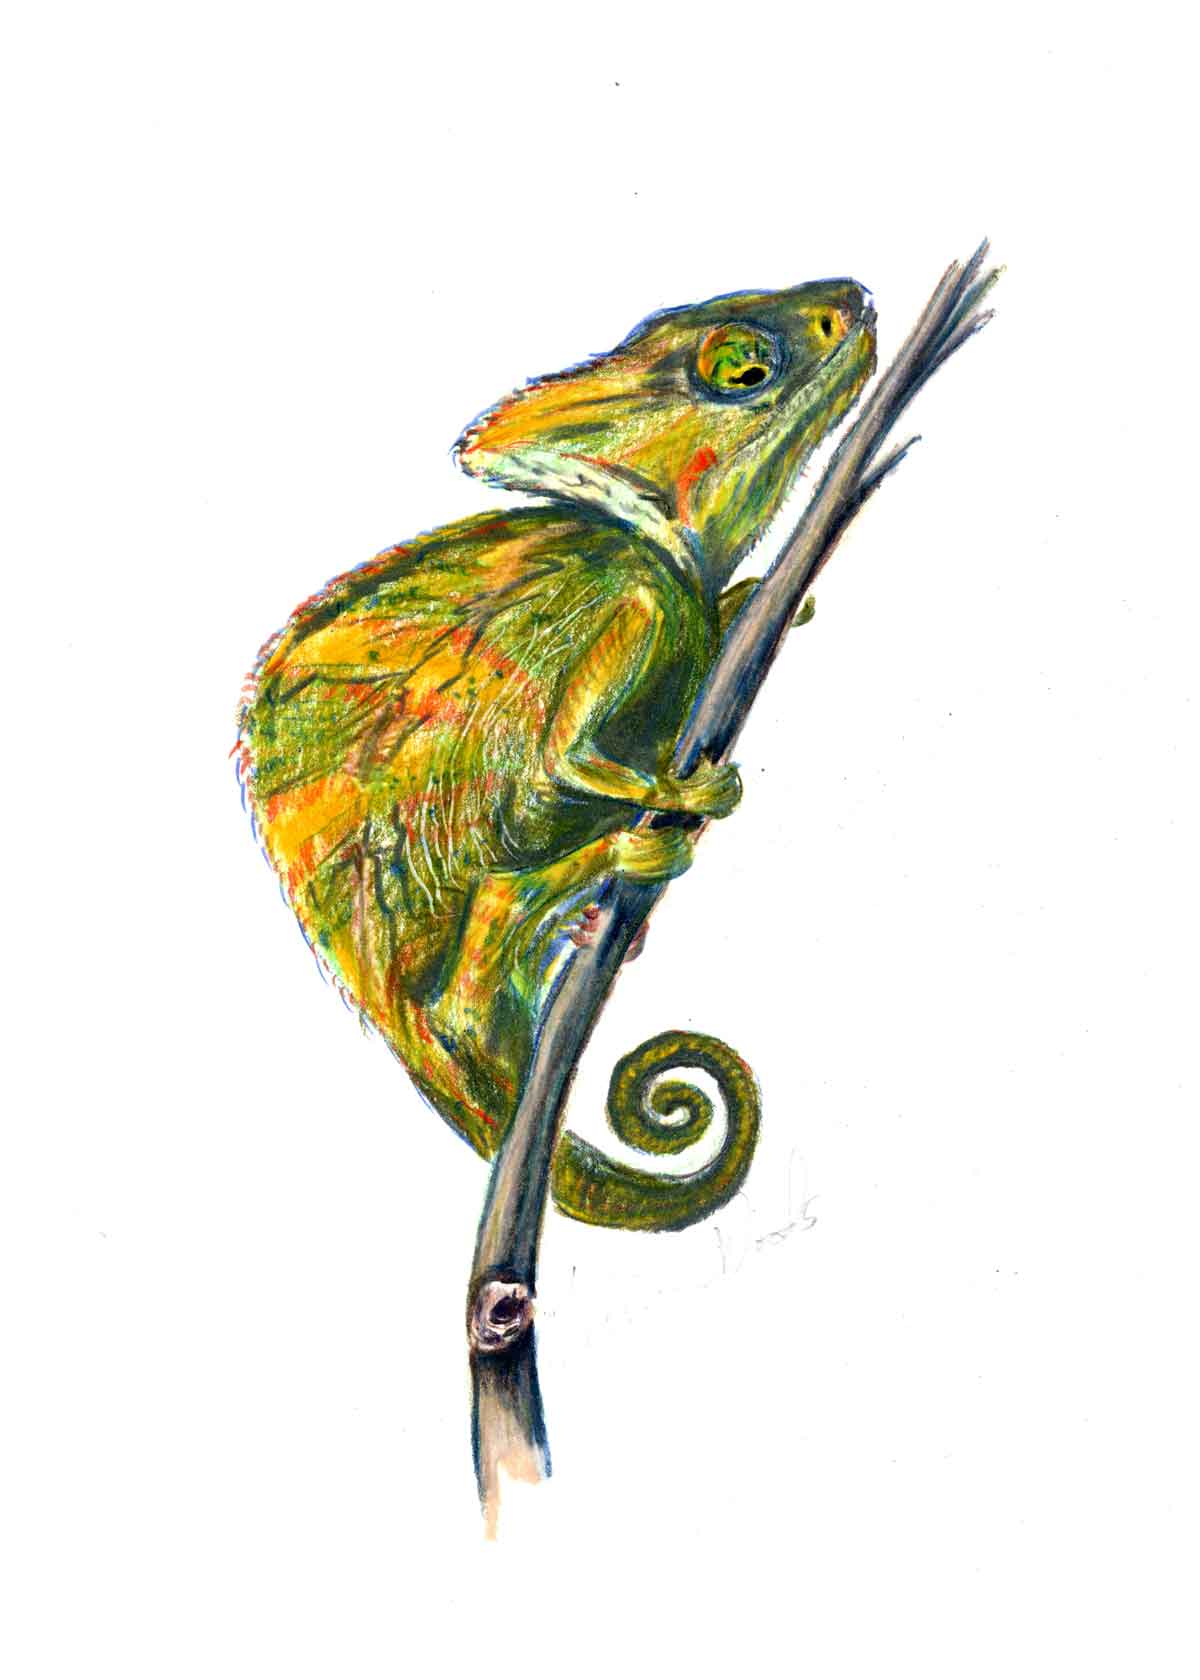 A pet portrait of a chameleon.